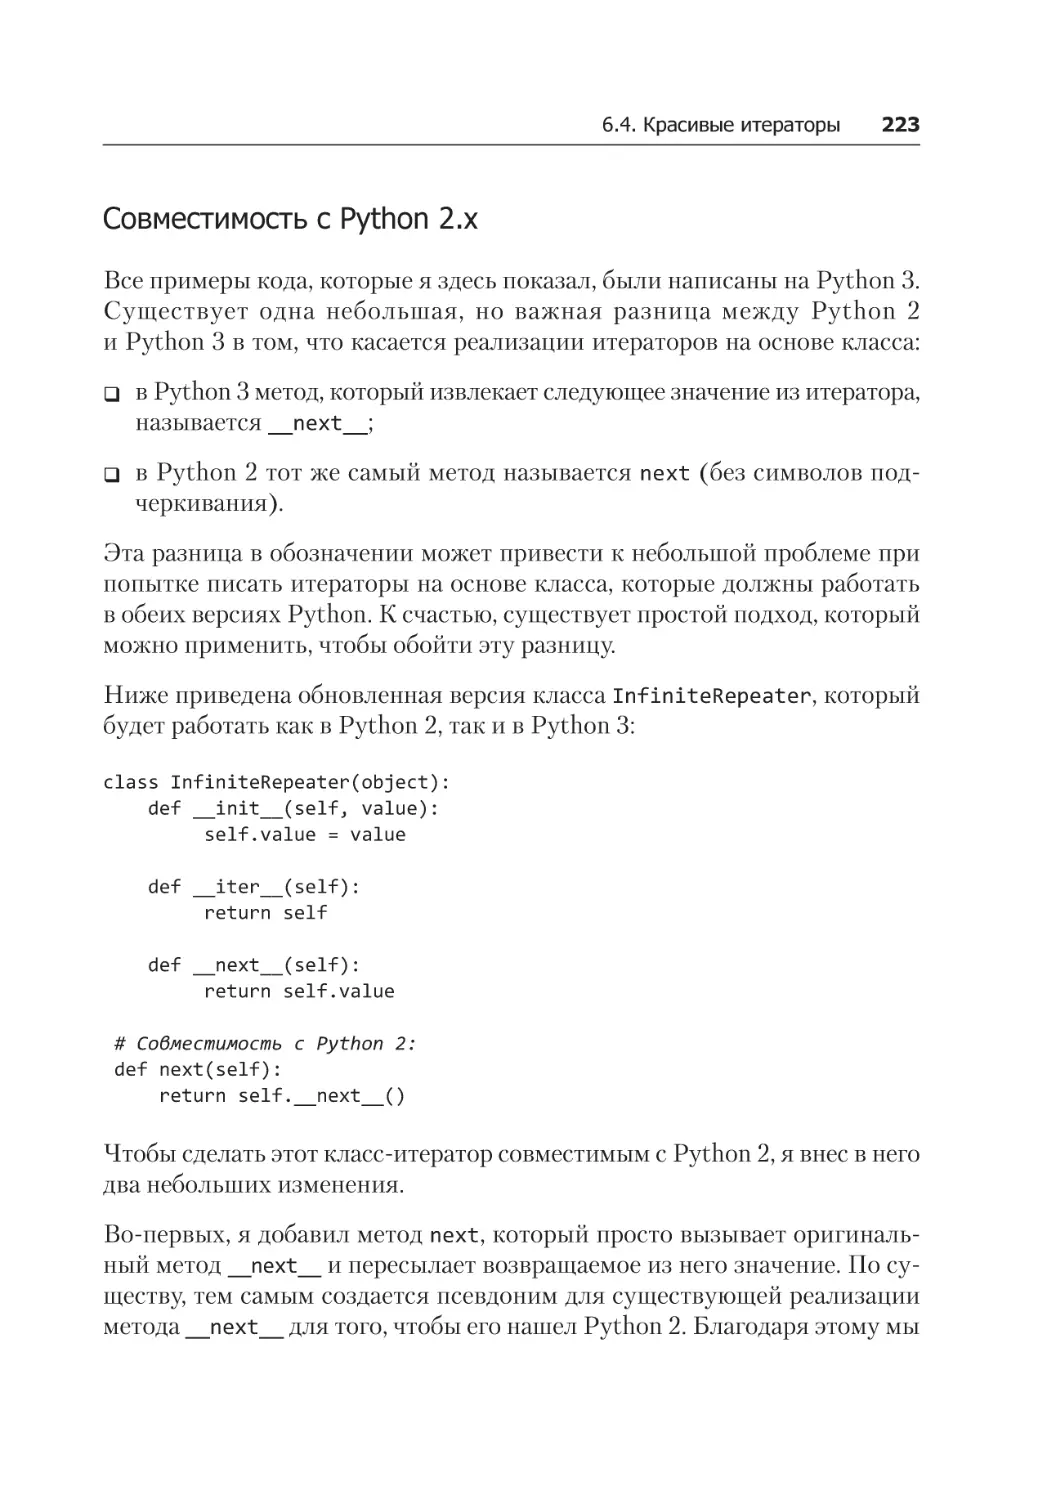 Совместимость с Python 2.x